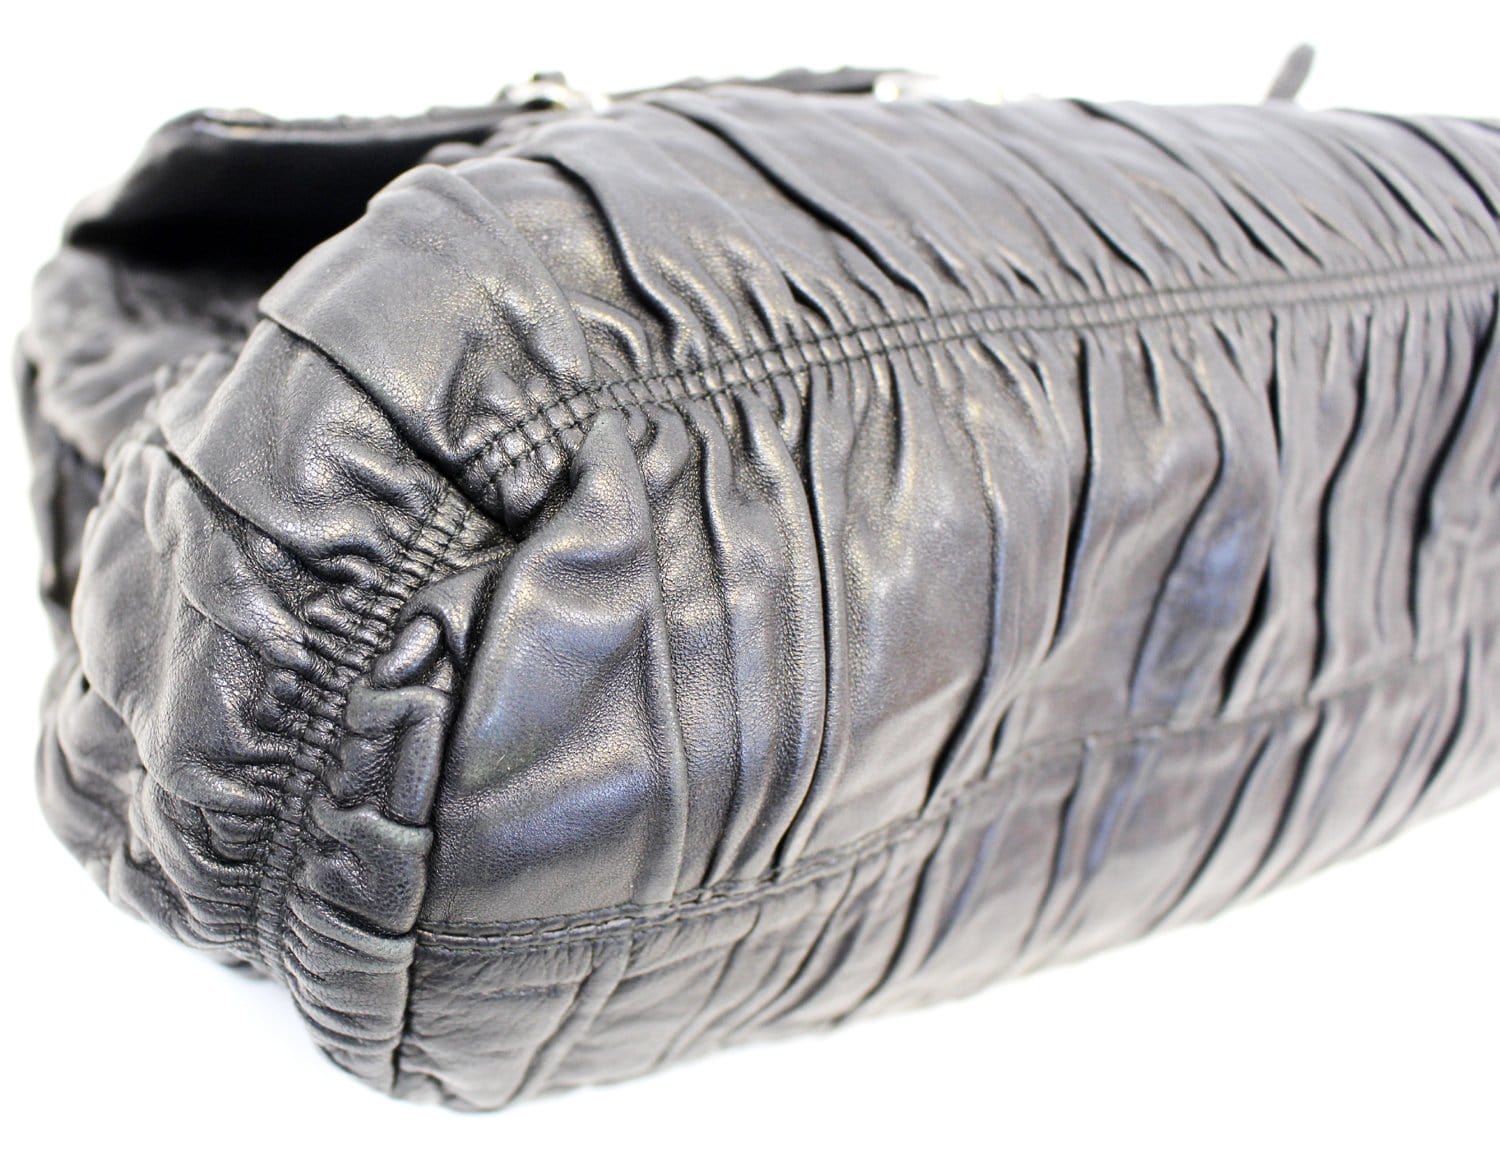 Only 278.00 usd for Prada Calfskin Leather Bar Clutch Shoulder Bag